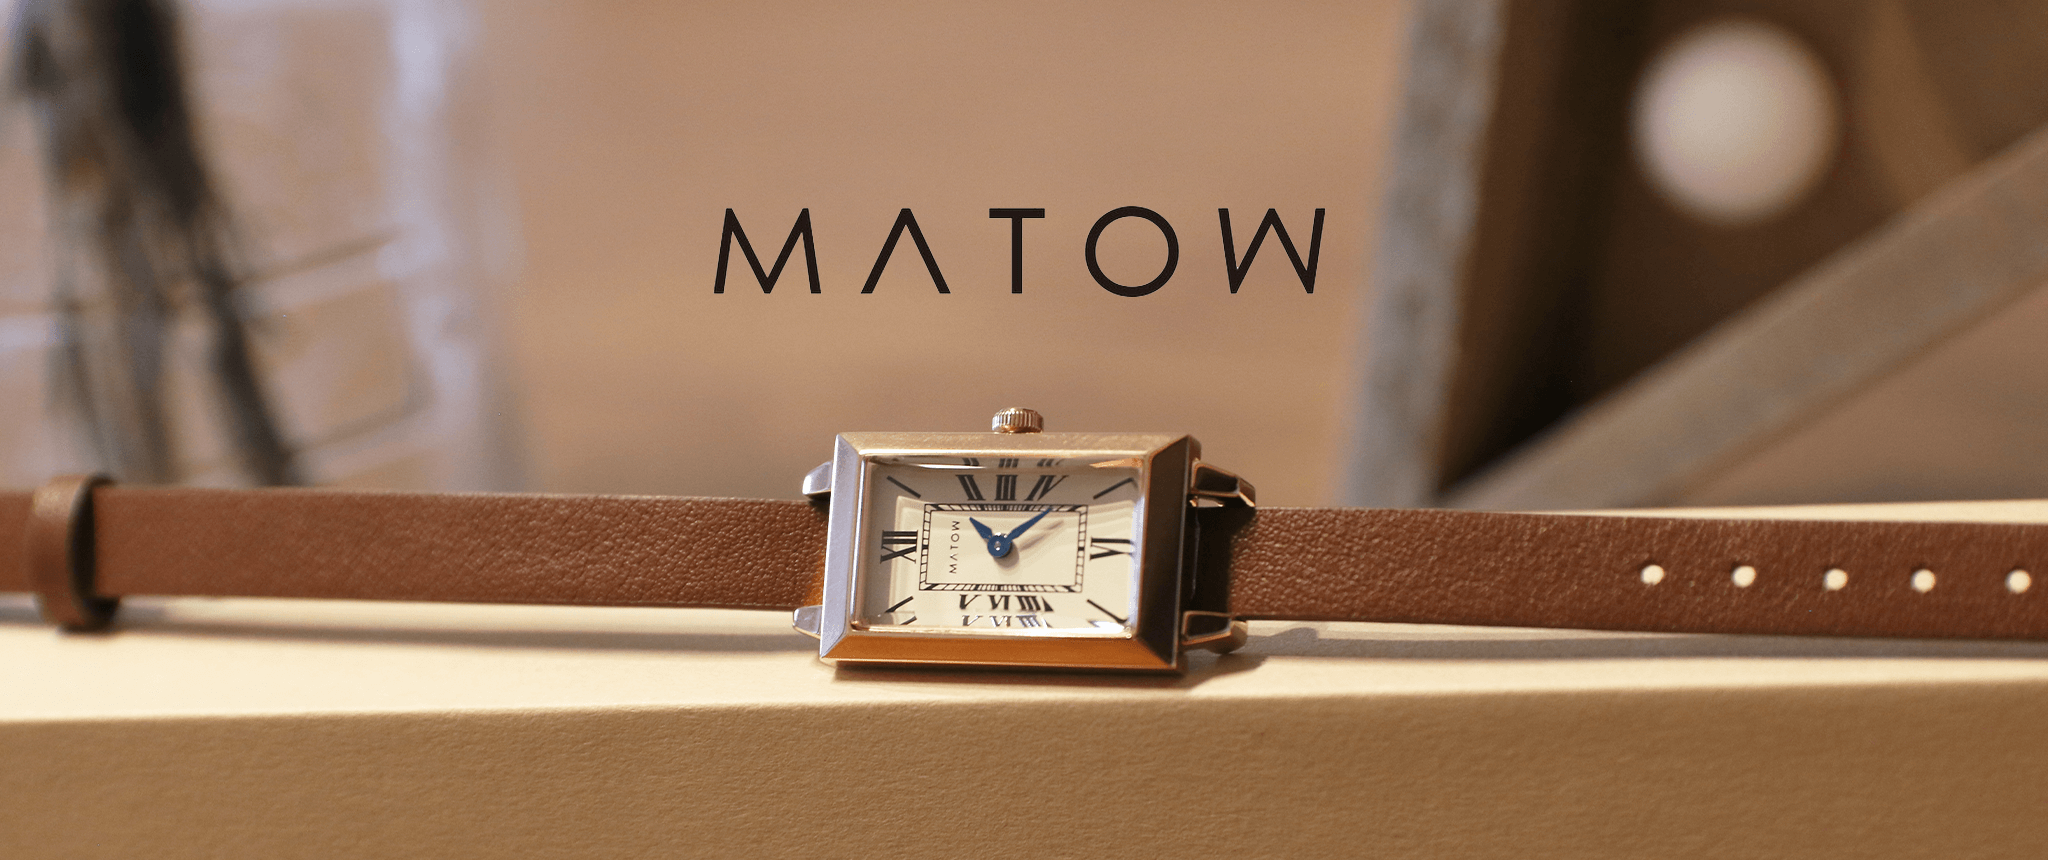 【新品未使用】MATOW 腕時計コメント無し即購入OK